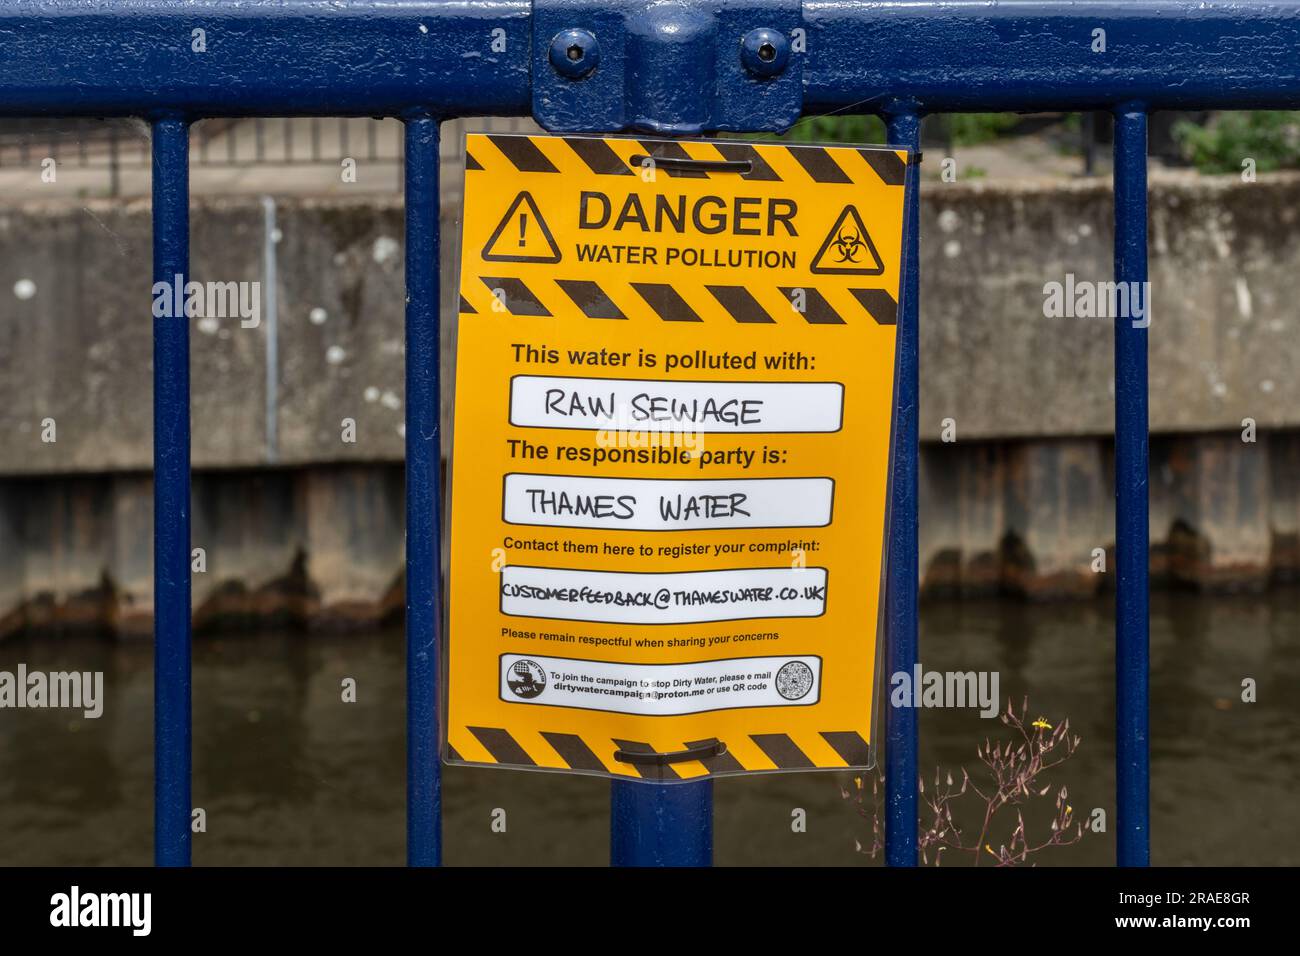 Signe de protestation lisant danger pollution de l'eau, cette eau est polluée par des eaux d'égout brutes. La partie responsable est Thames Water. River Wey, Guildford, Royaume-Uni Banque D'Images